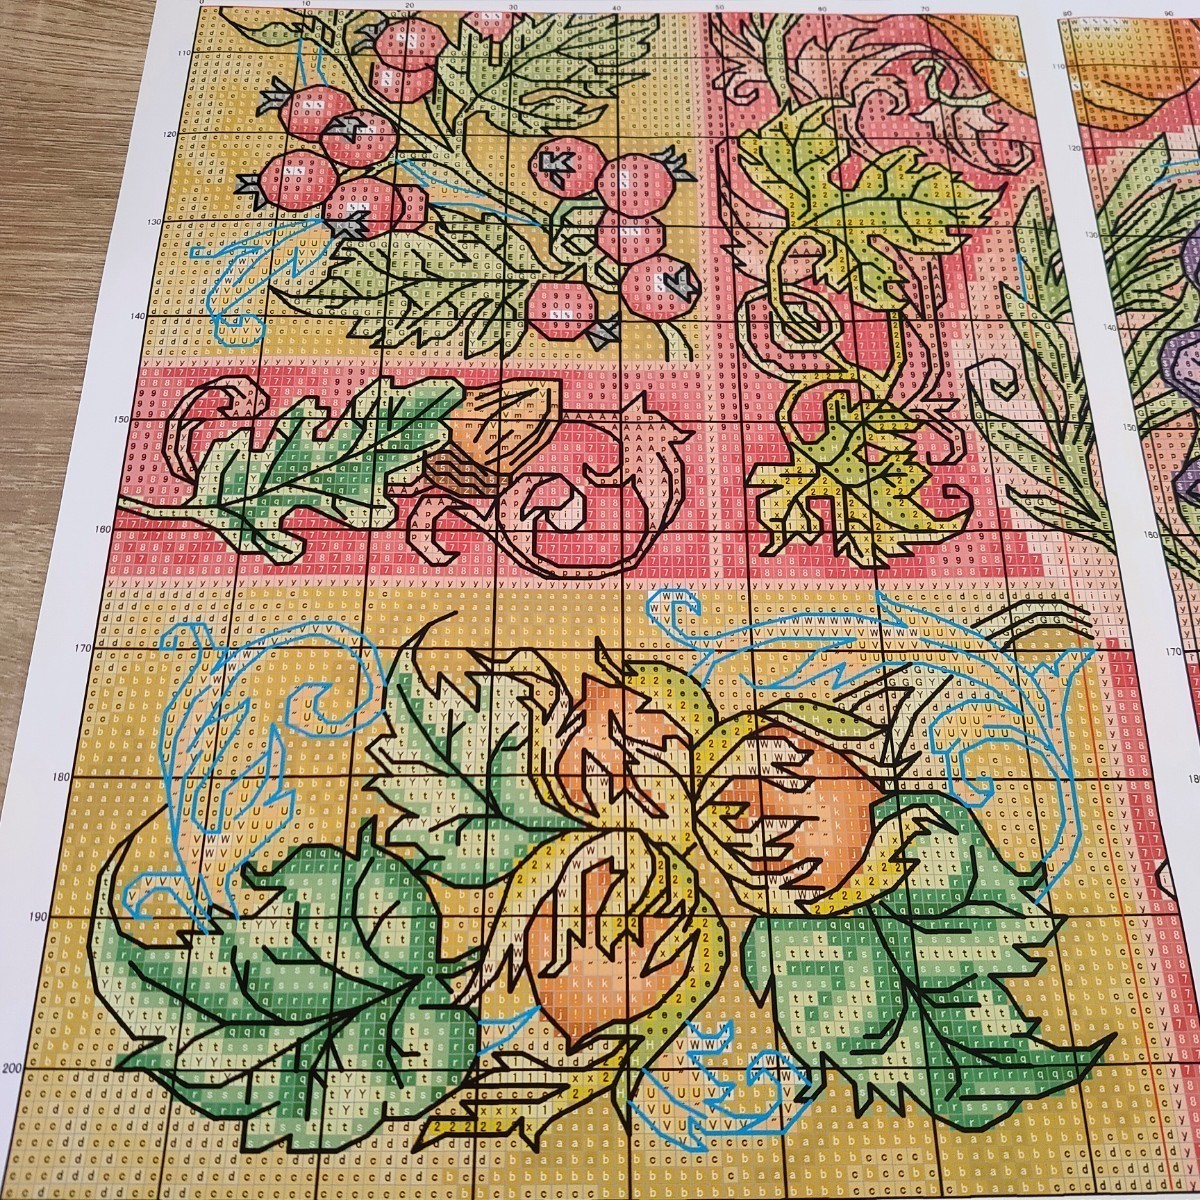 クロスステッチキット Elements of autumn 秋 キノコ モチーフ 14CT 34×46cm 図案印刷あり 刺繍